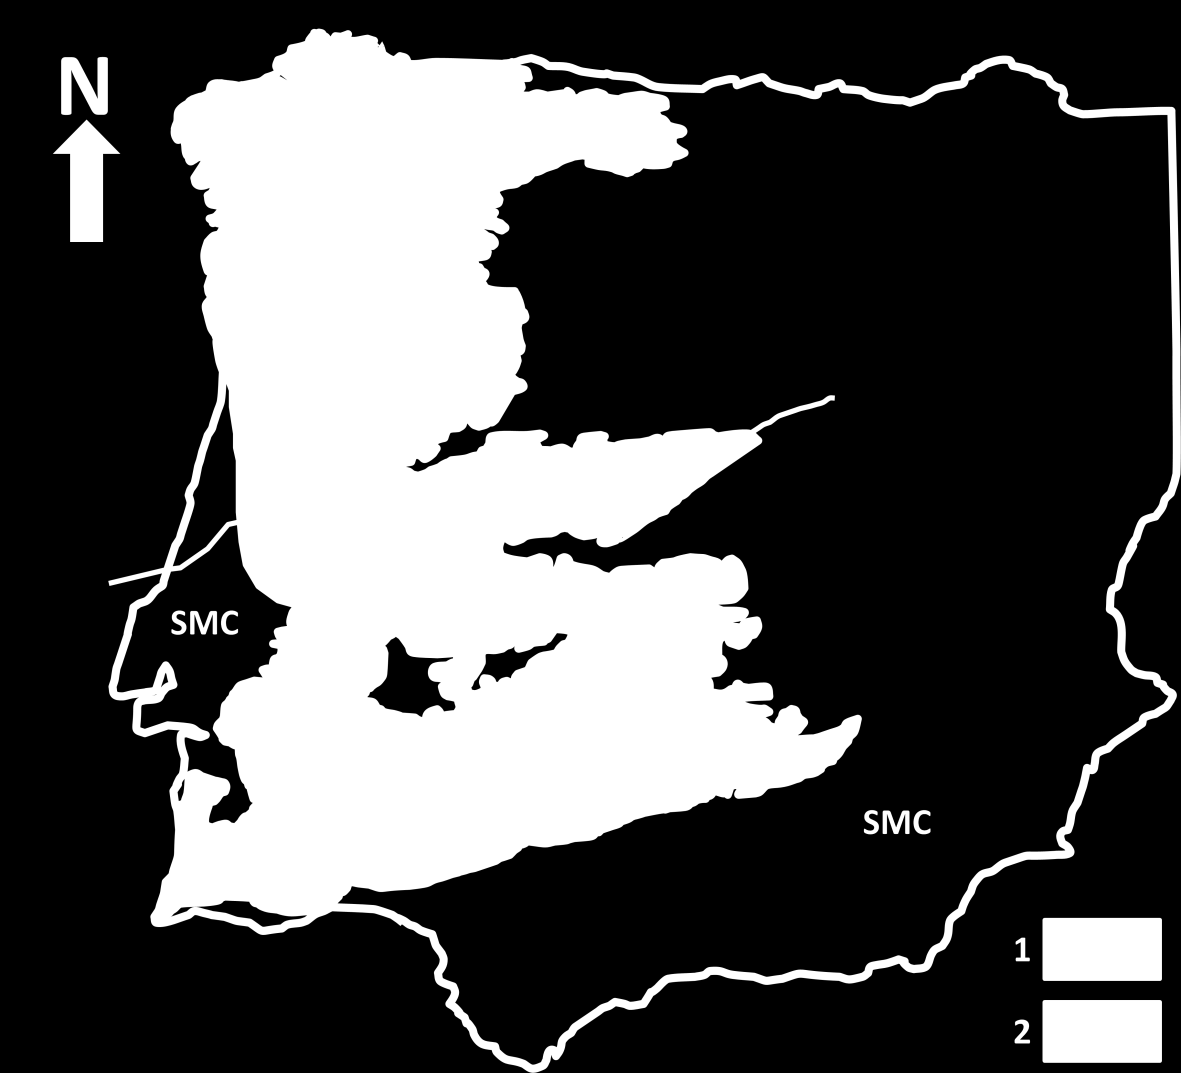 A ZOM é um domínio geotectónico situado na parte sul do maciço ibérico, que representa a maior, mais completa e continua expressão do Varisco na parte Oeste da Europa, Fig. 1.